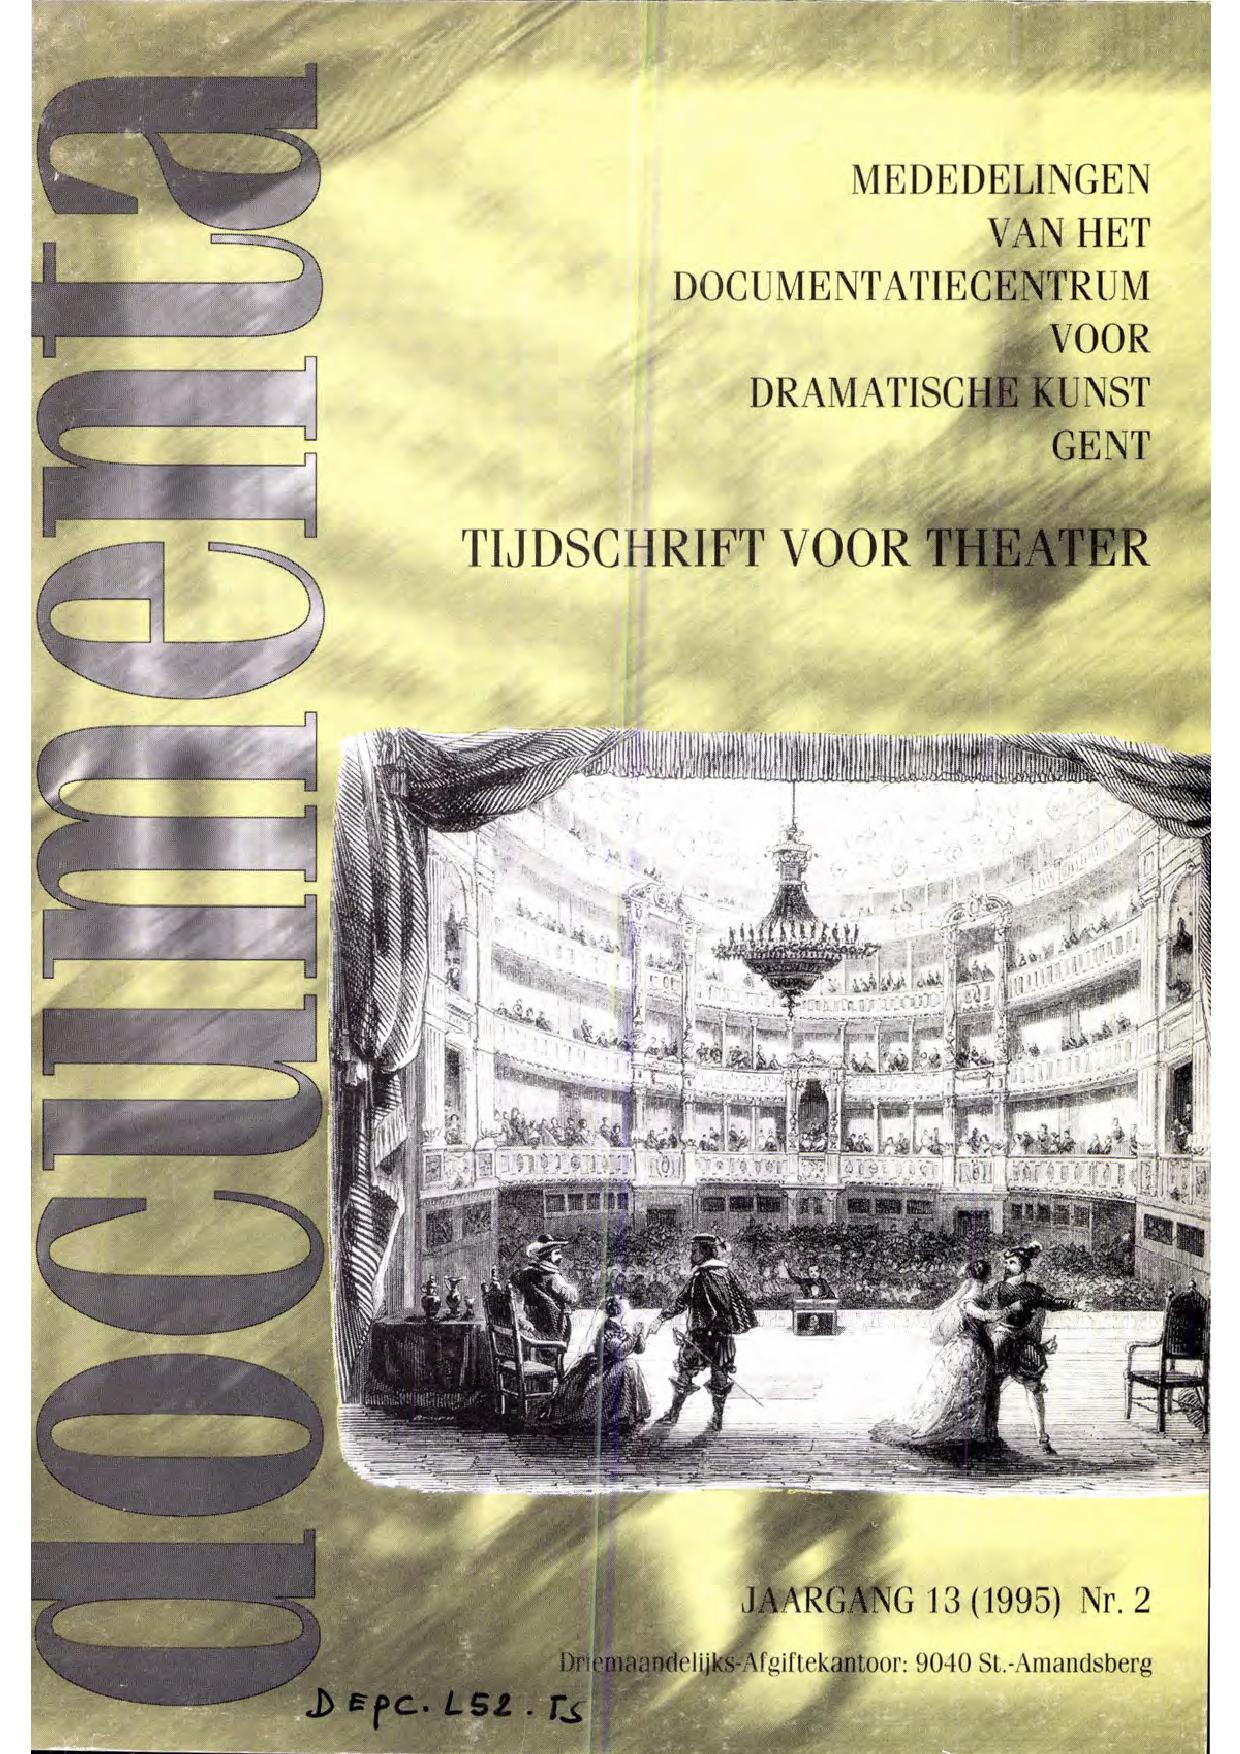 Volume 13 • Issue 2 • 1995 • Interculturele aspecten van het figurentheater